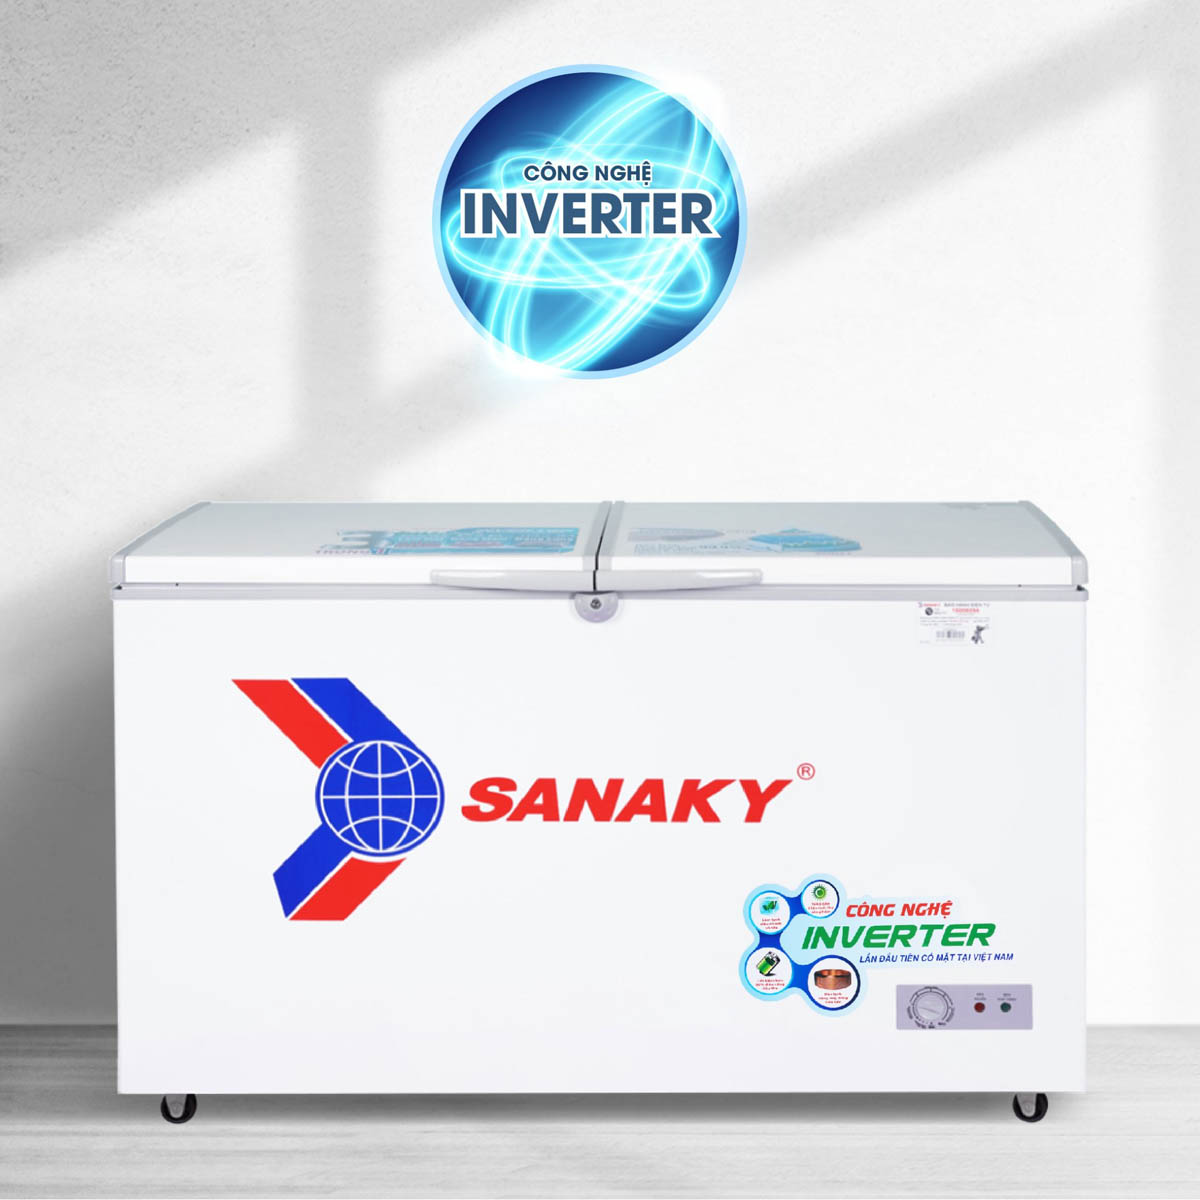 Tủ Đông Sanaky VH-4099A3 được trang bị công nghệ Smart Inverter